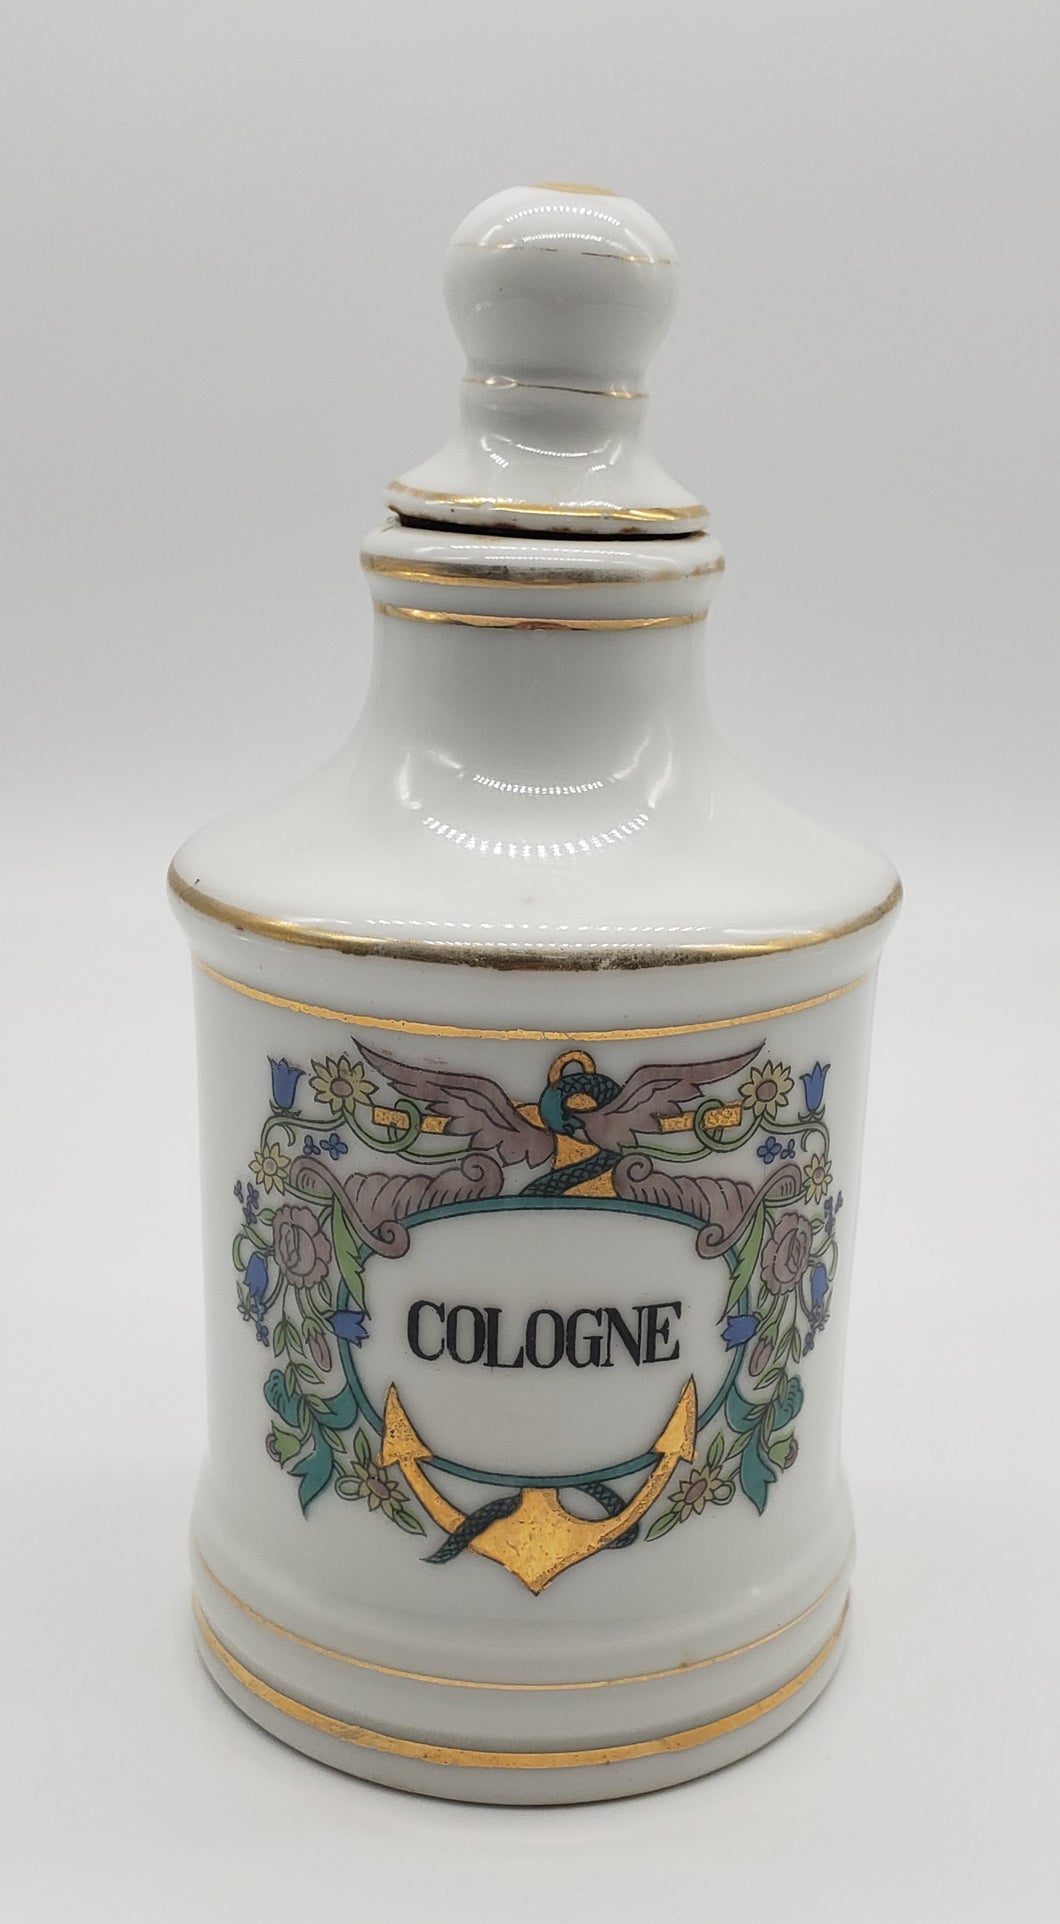 Porcelain Apothecary Jar - Cologne